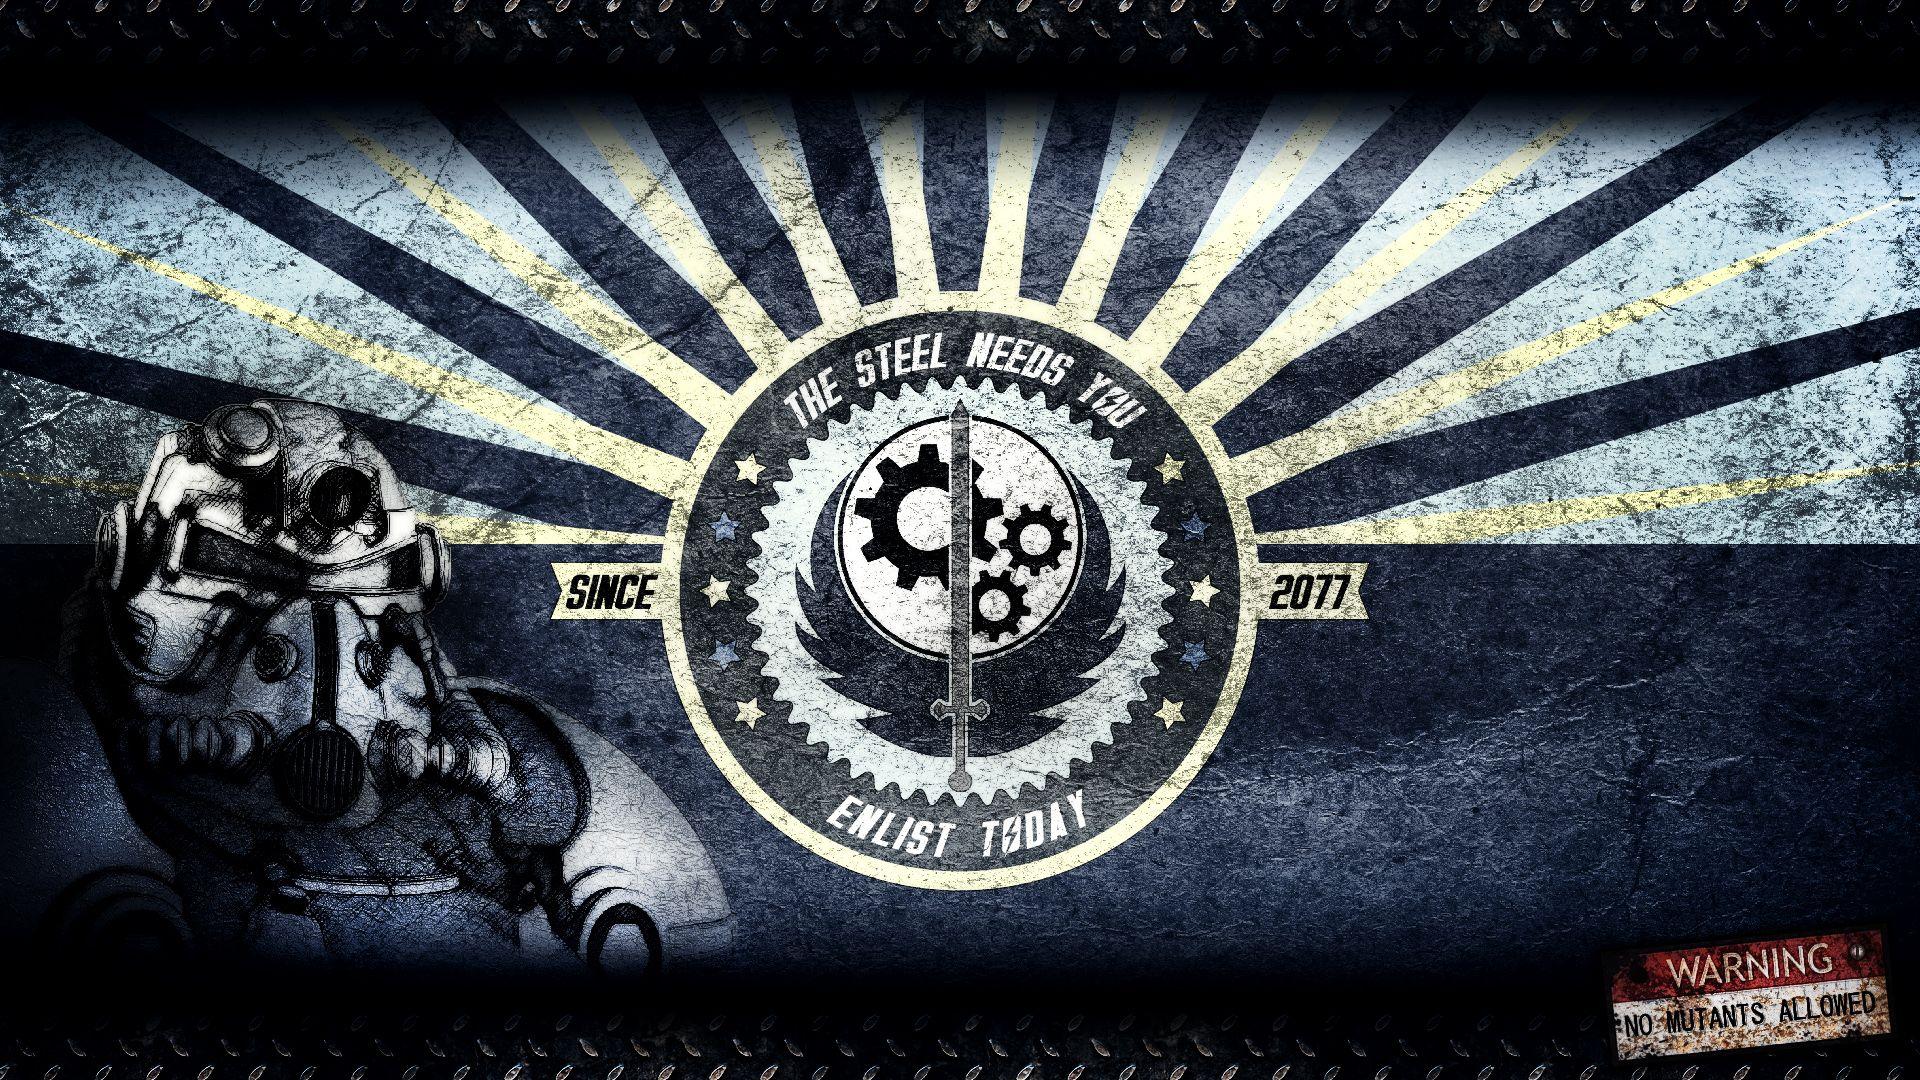 BoS wallpaper at Fallout 4 Nexus and community